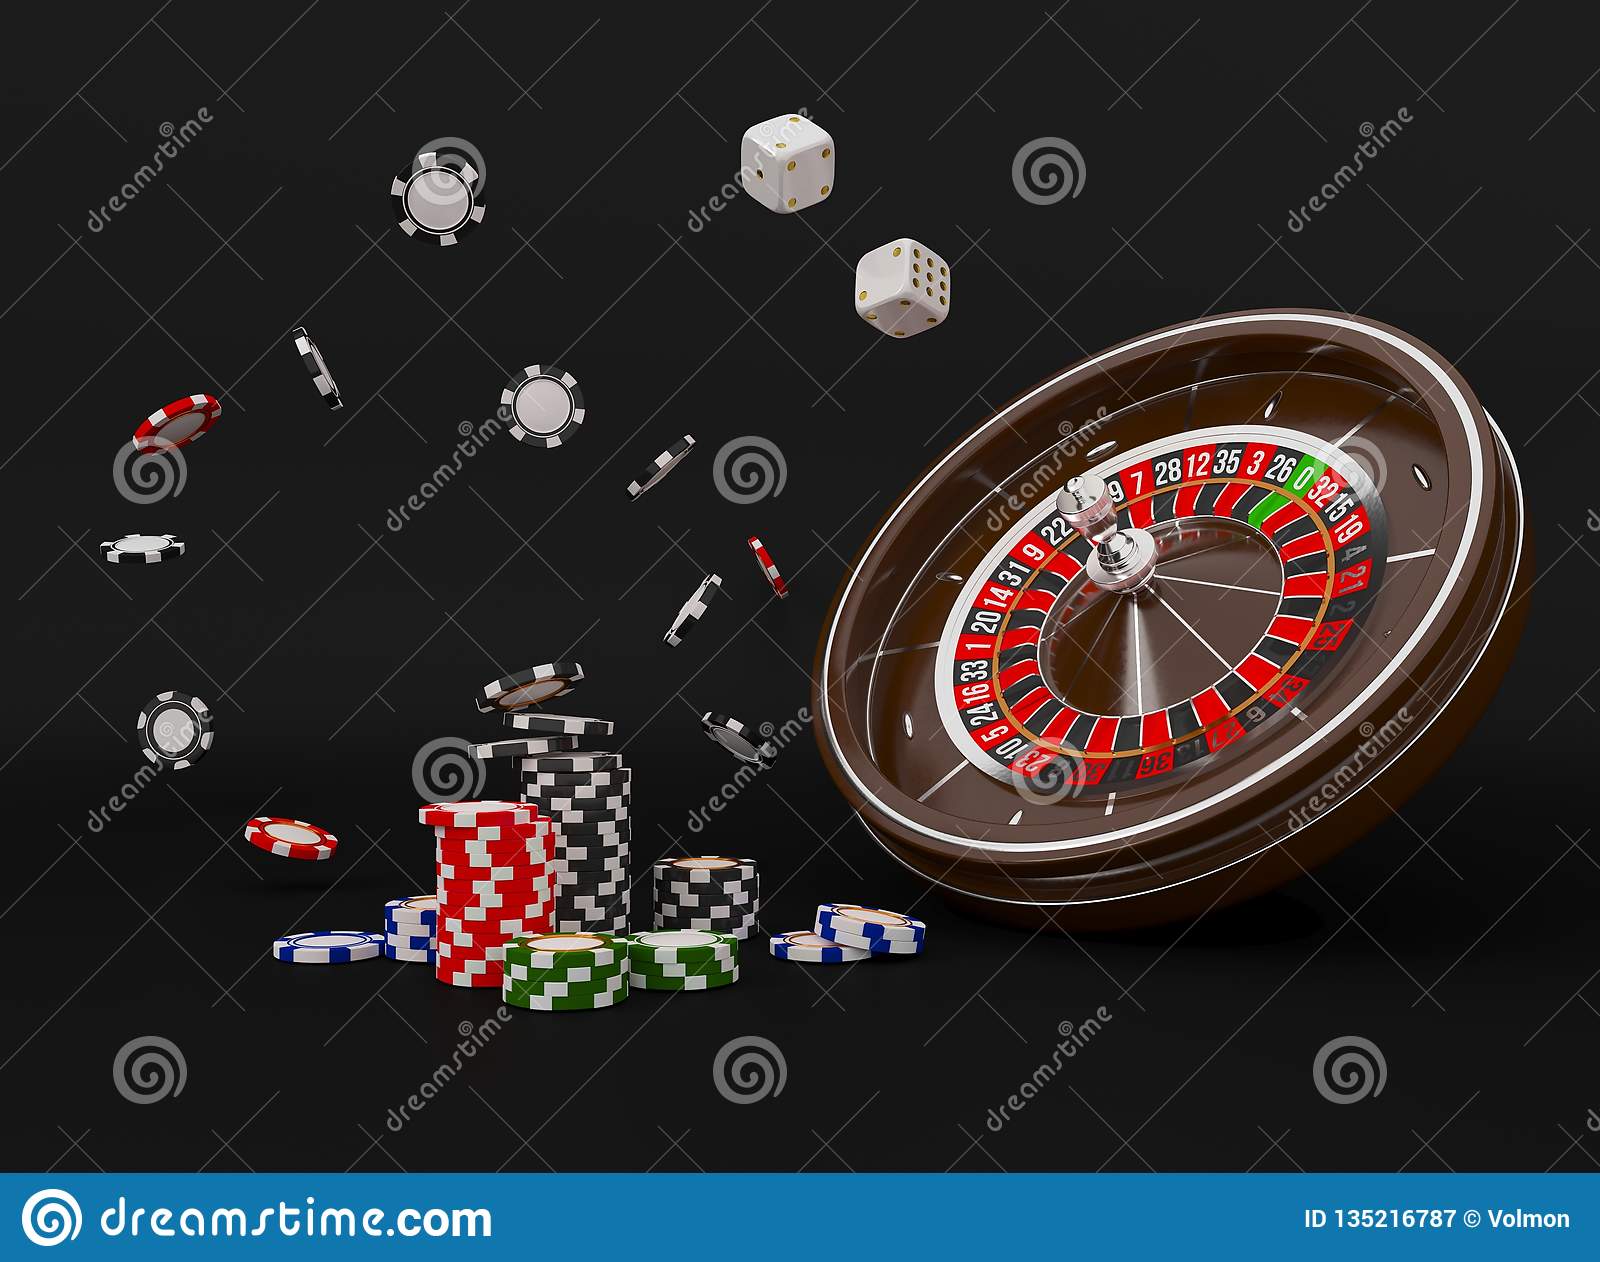 Online gambling bingo sites